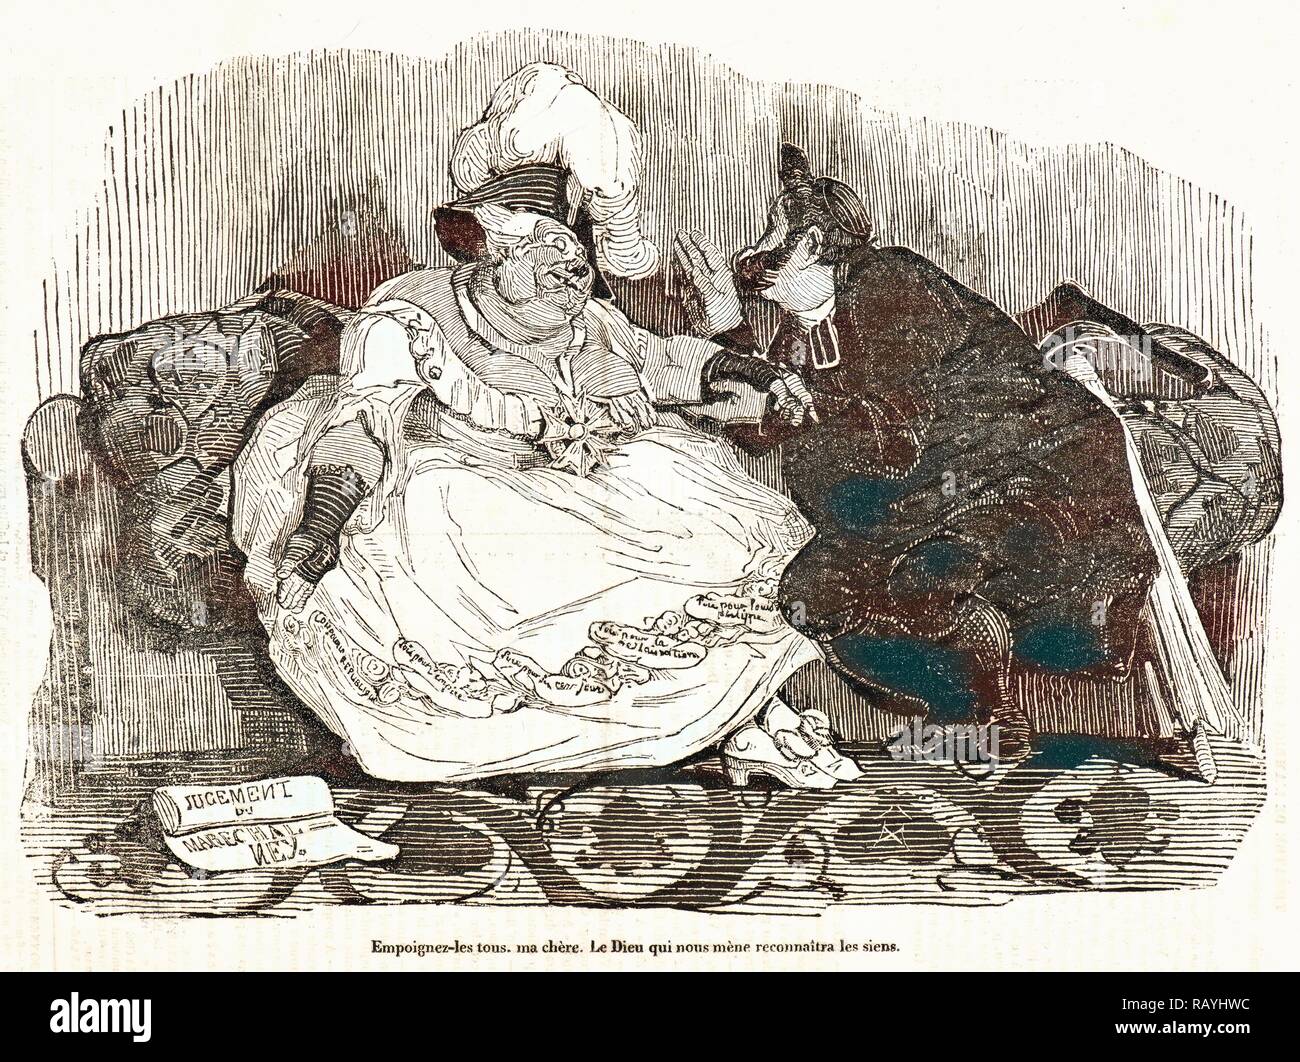 Honoré Daumier (French, 1808 - 1879). Empoignez-les Tous, ma chere. Le Dieu qui nous mene reconnaitra le siens., 1834 reimagined Stock Photo